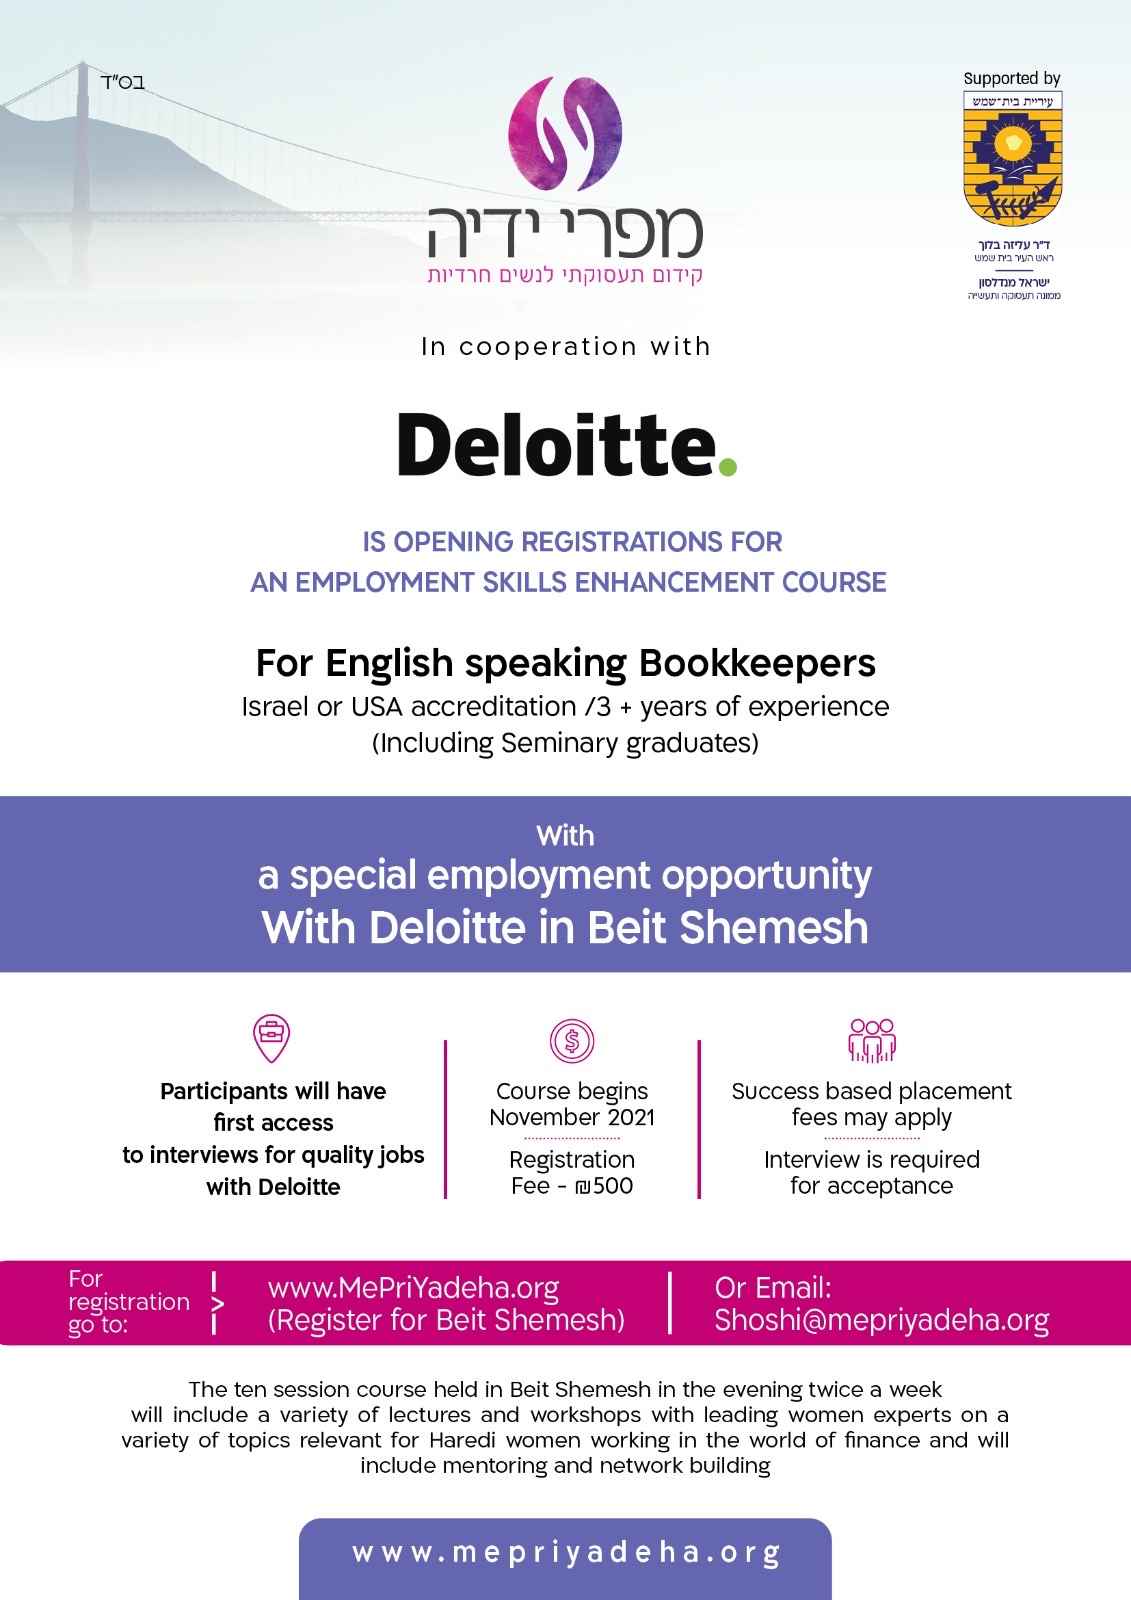 Deloitte Bookkeeping Course Flyer